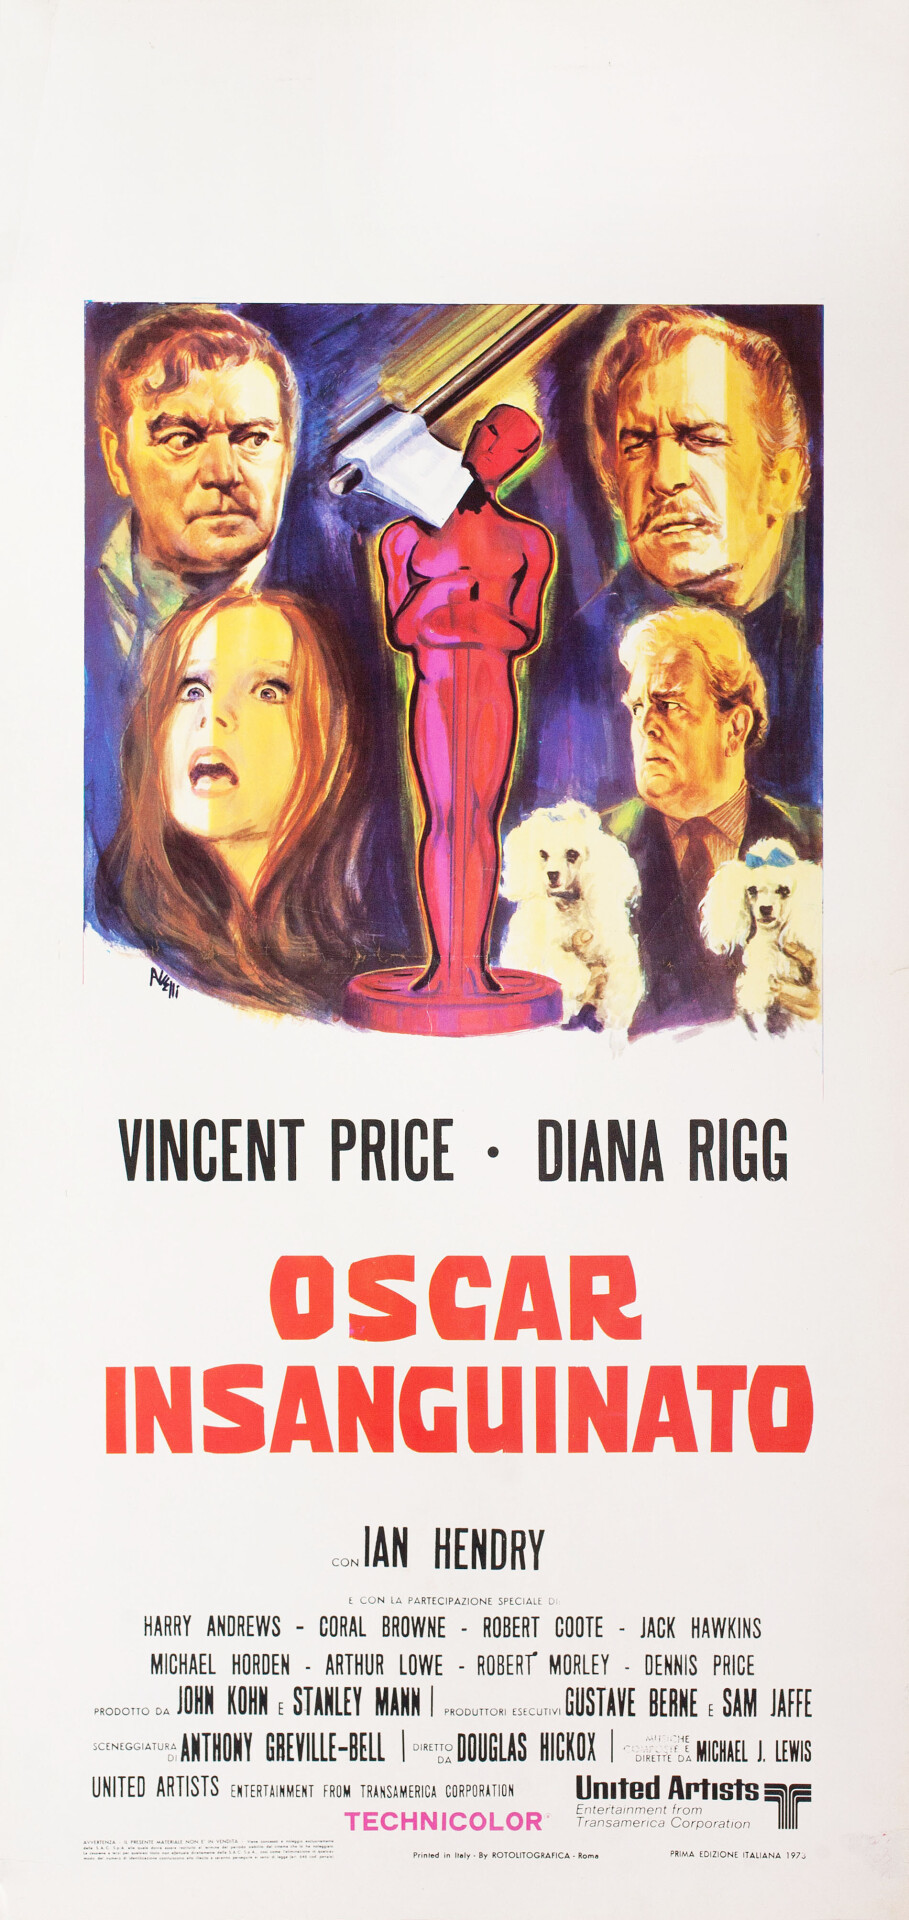 Театр крови (Theatre of Blood, 1973), режиссёр Дуглас Хикокс, итальянский постер к фильму, автор Тино Авелли (ужасы, 1973 год)